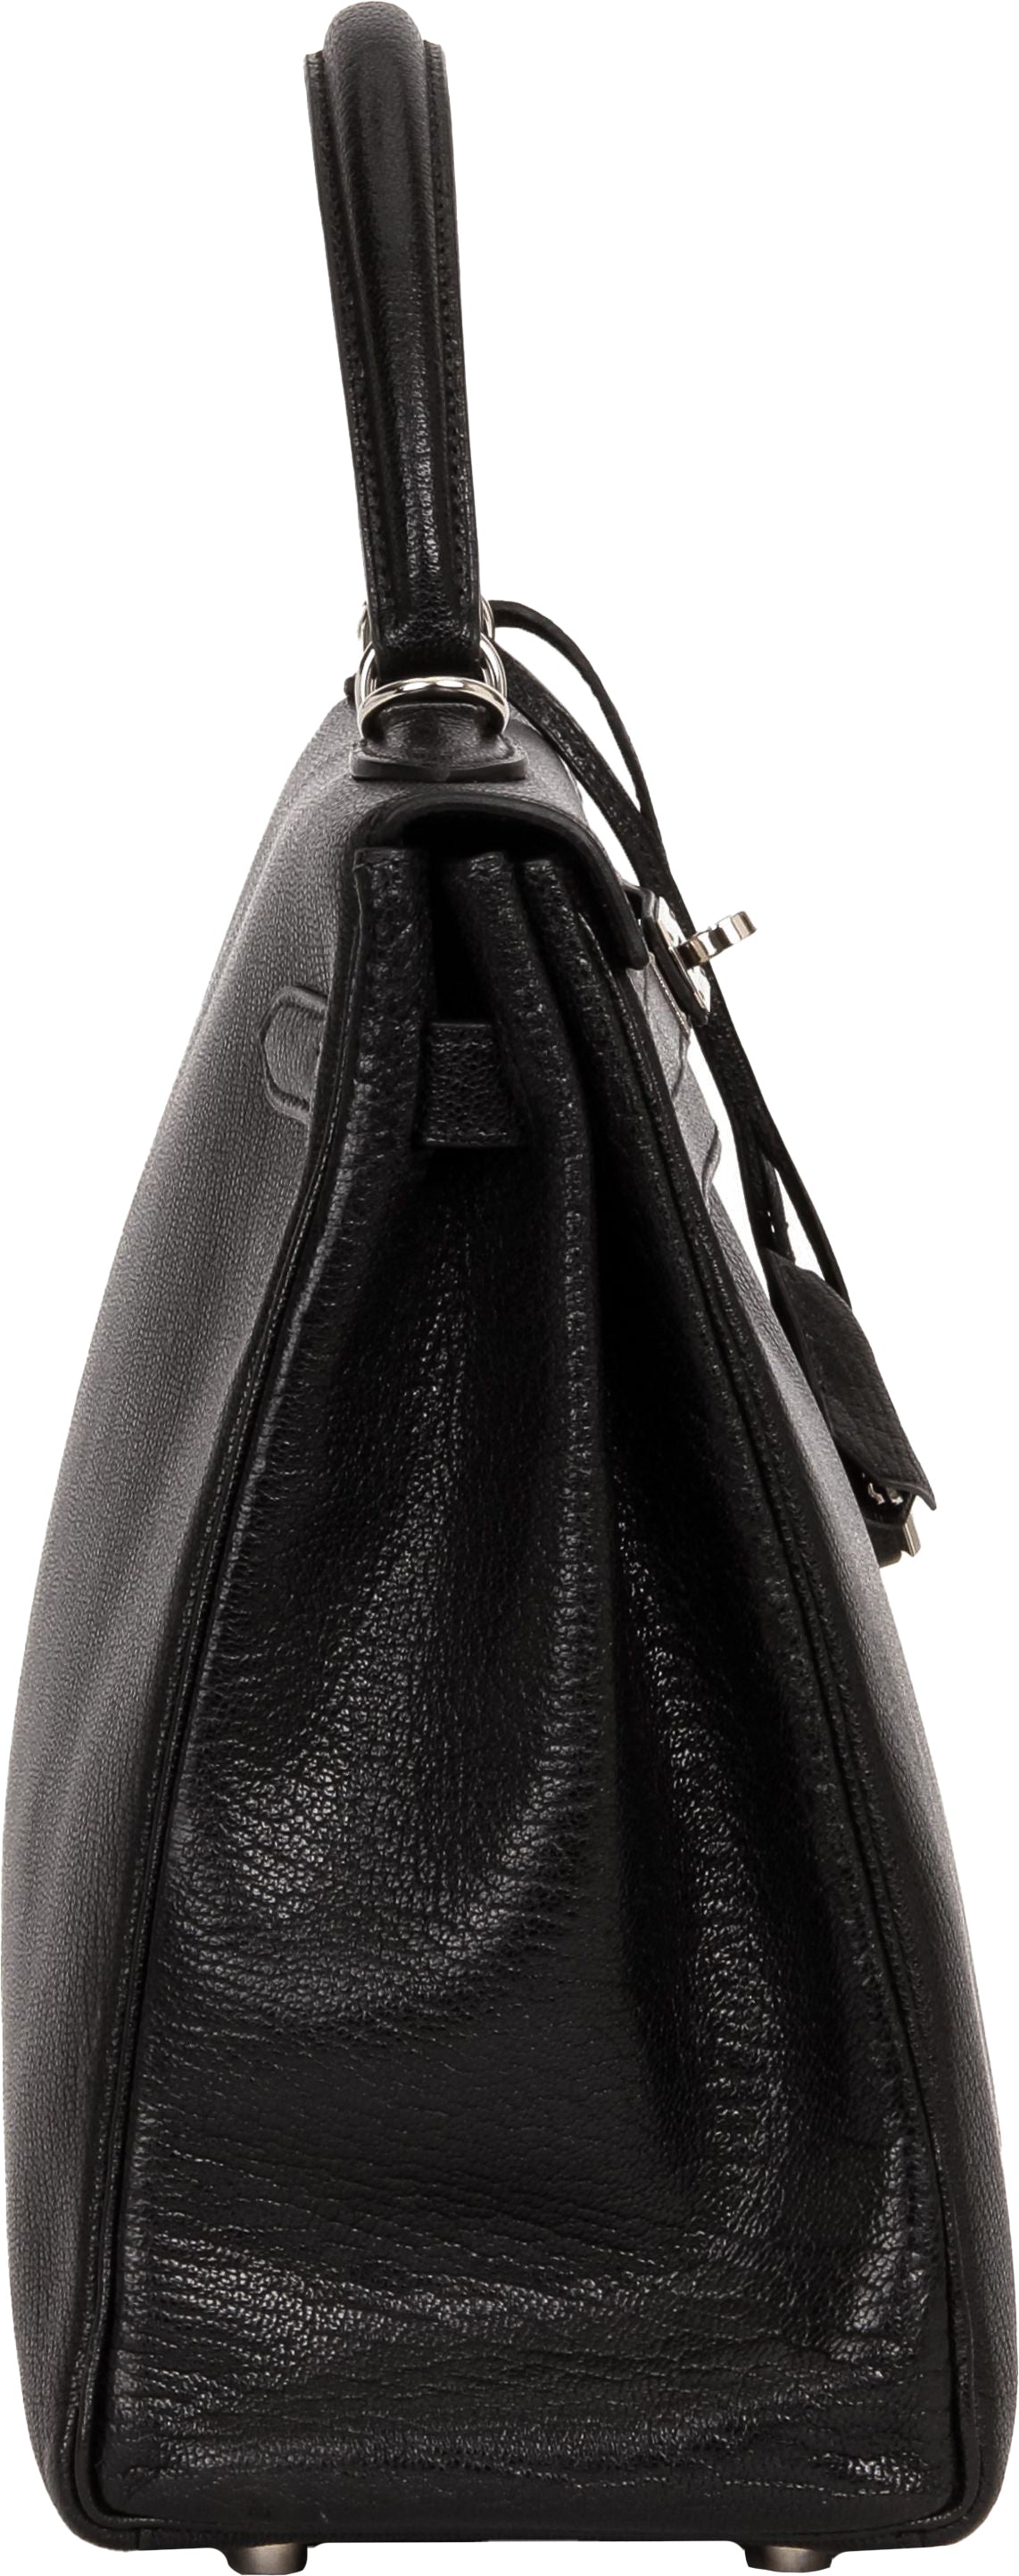 HERMES Kelly 35 Chevre de Coromandel Black Goatskin Leather Handbag